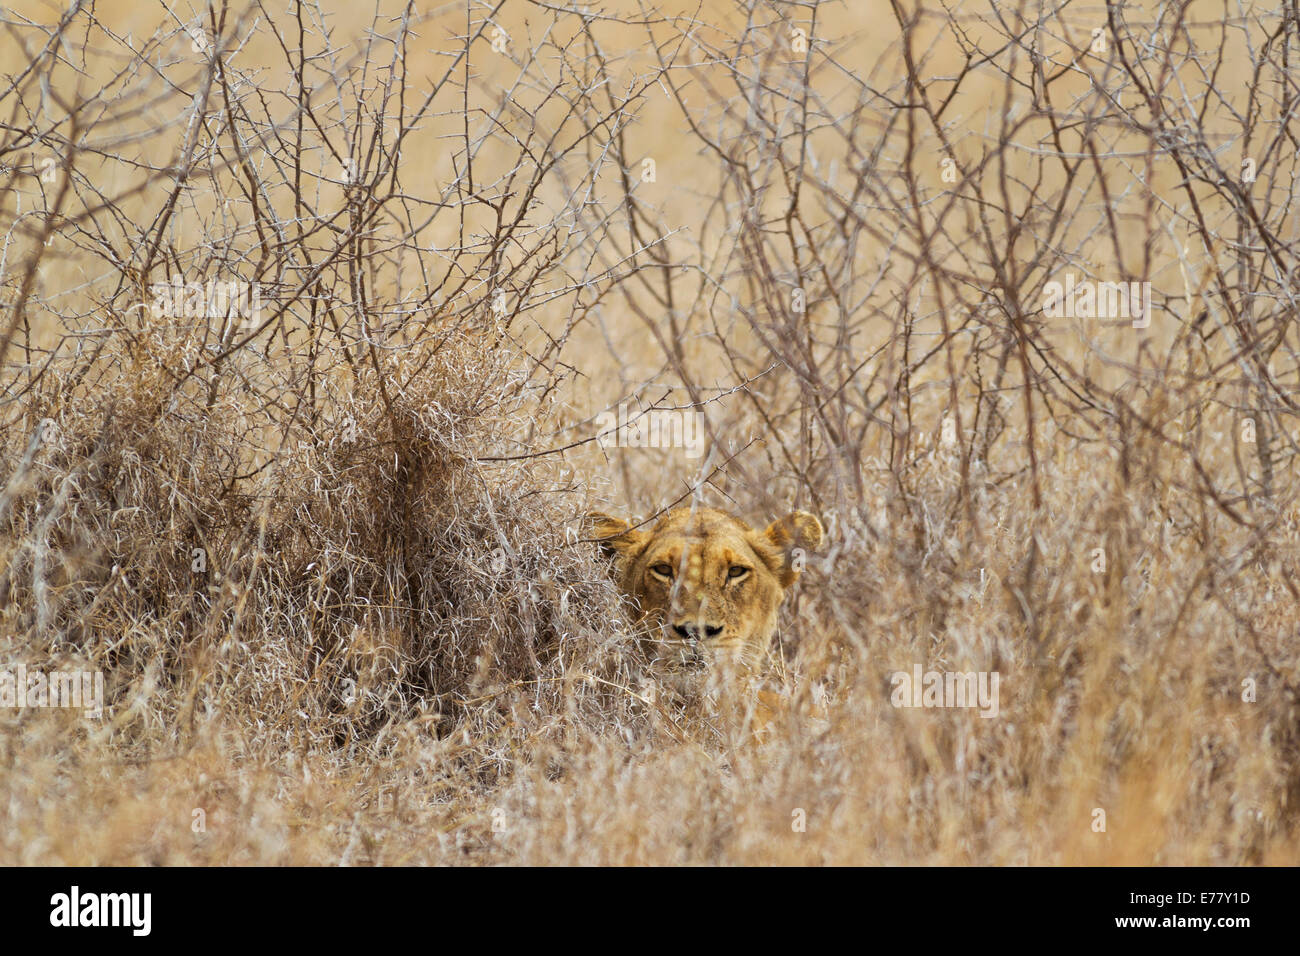 Lioness (Panthera leo), caché, observe son environnement, Kruger National Park, Afrique du Sud Banque D'Images